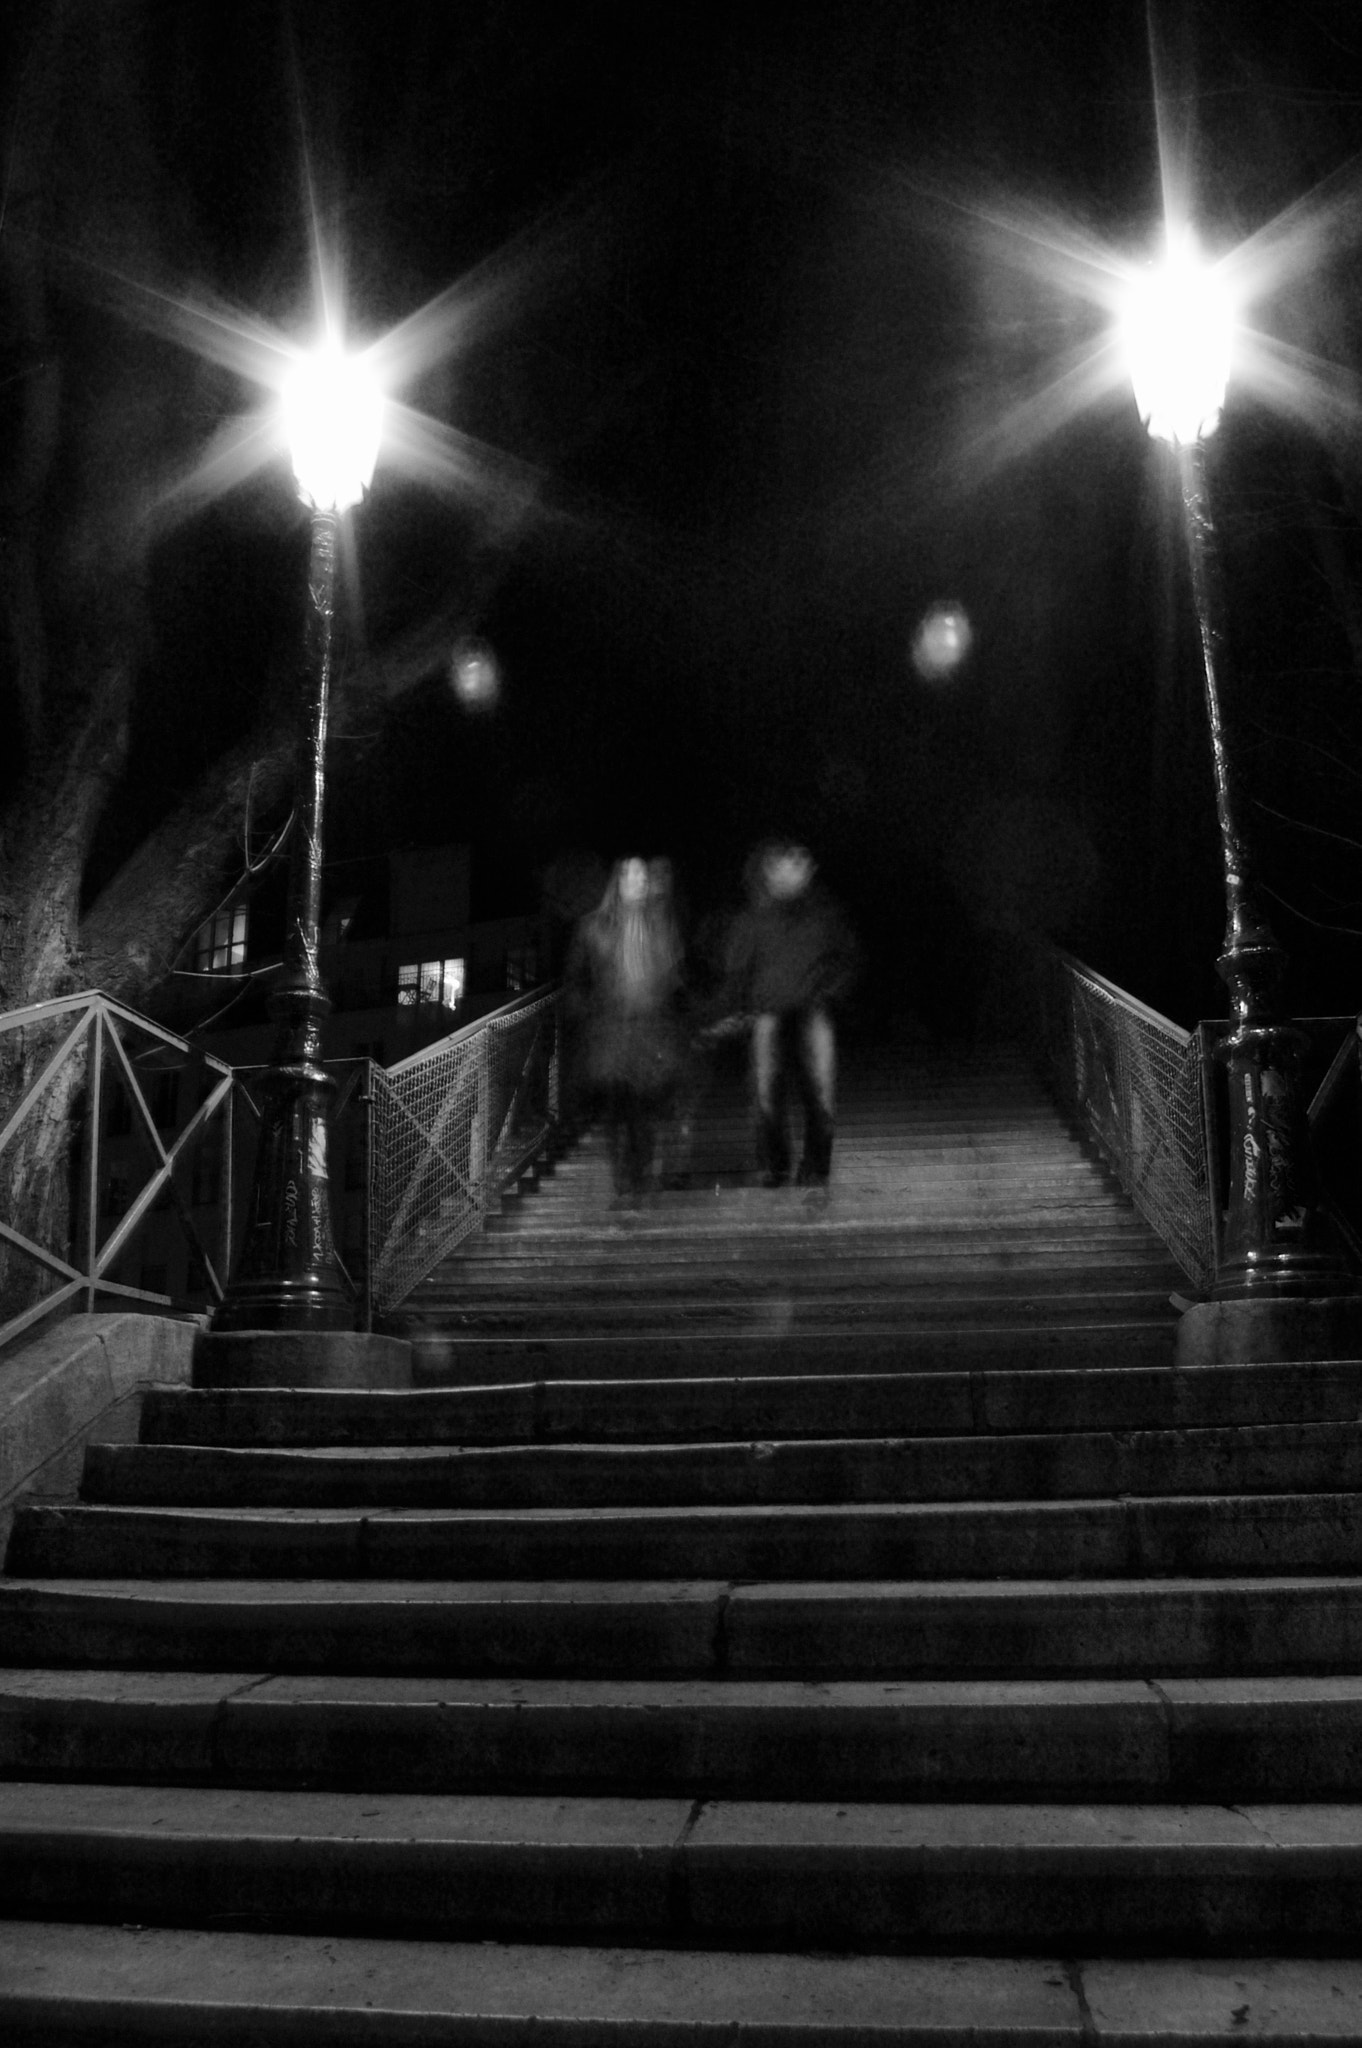 Pentax K110D sample photo. Les ombres du canal st martin paris photography